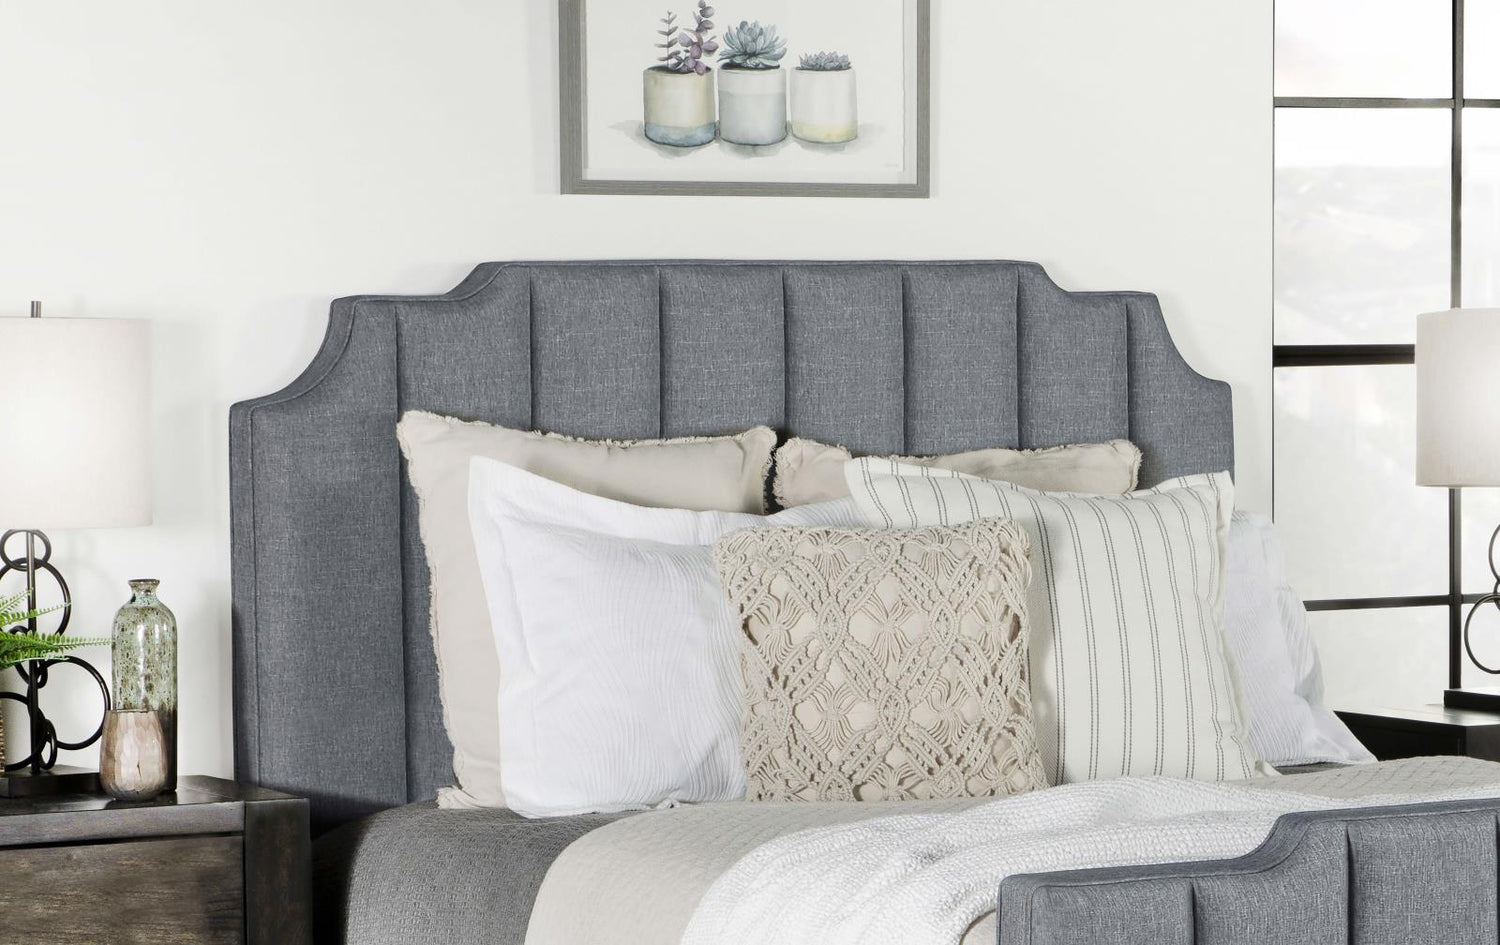 Fiona Upholstered Panel Bed Light Gray - 306029KE - Bien Home Furniture &amp; Electronics